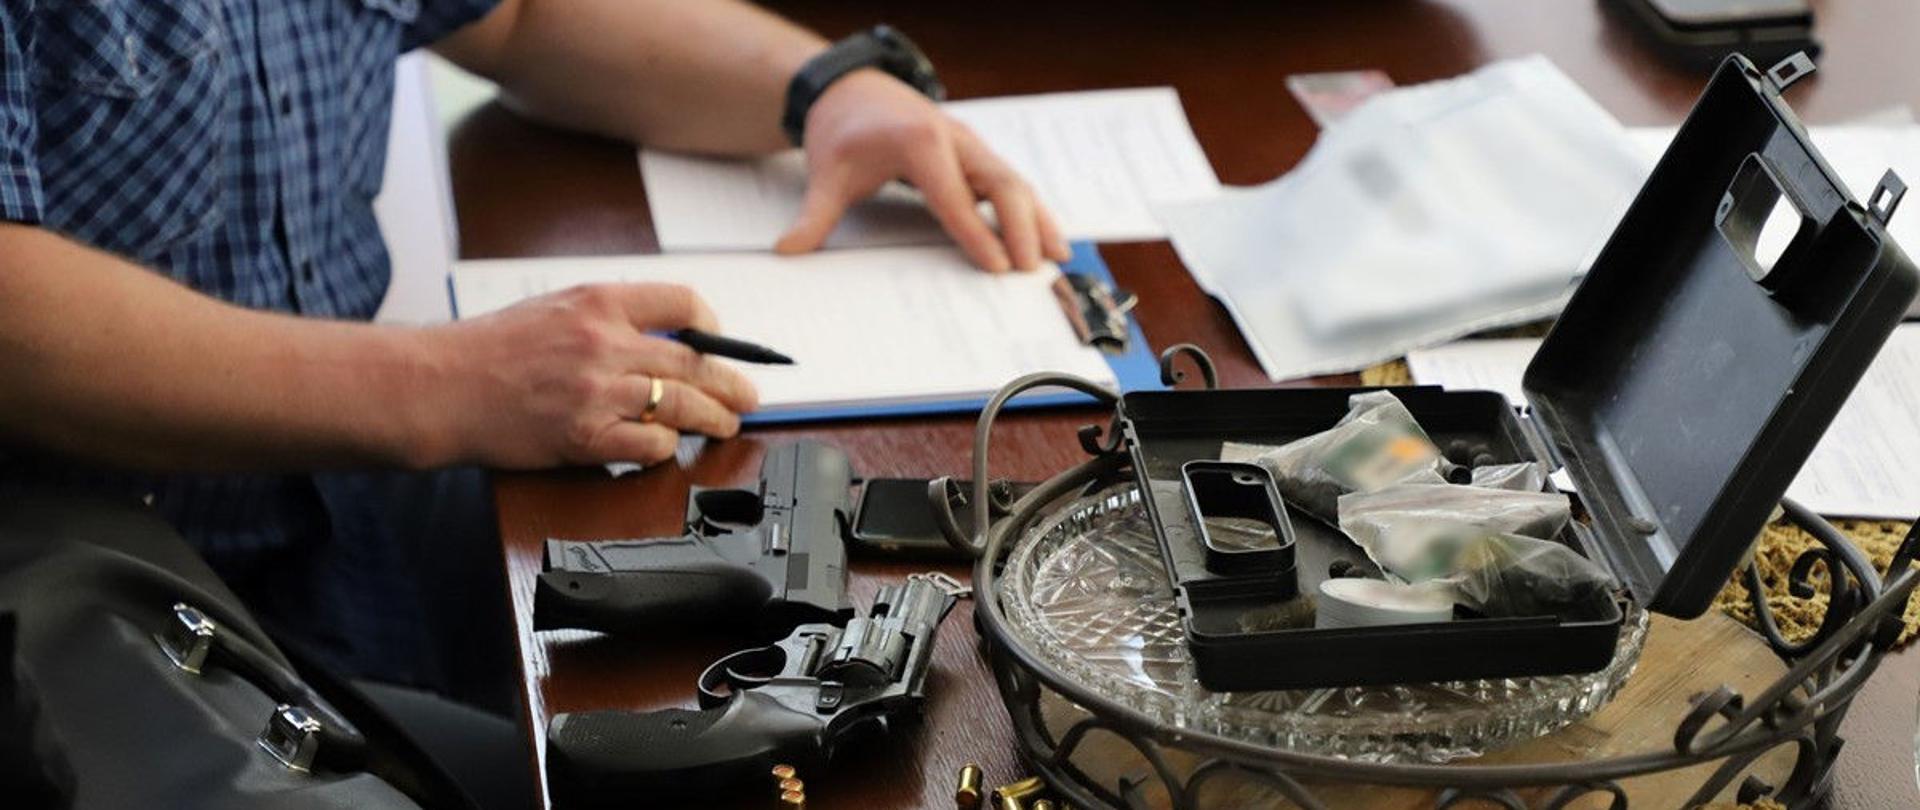 Funkcjonariusz podczas pisania protokołu, obok zatrzymana broń.